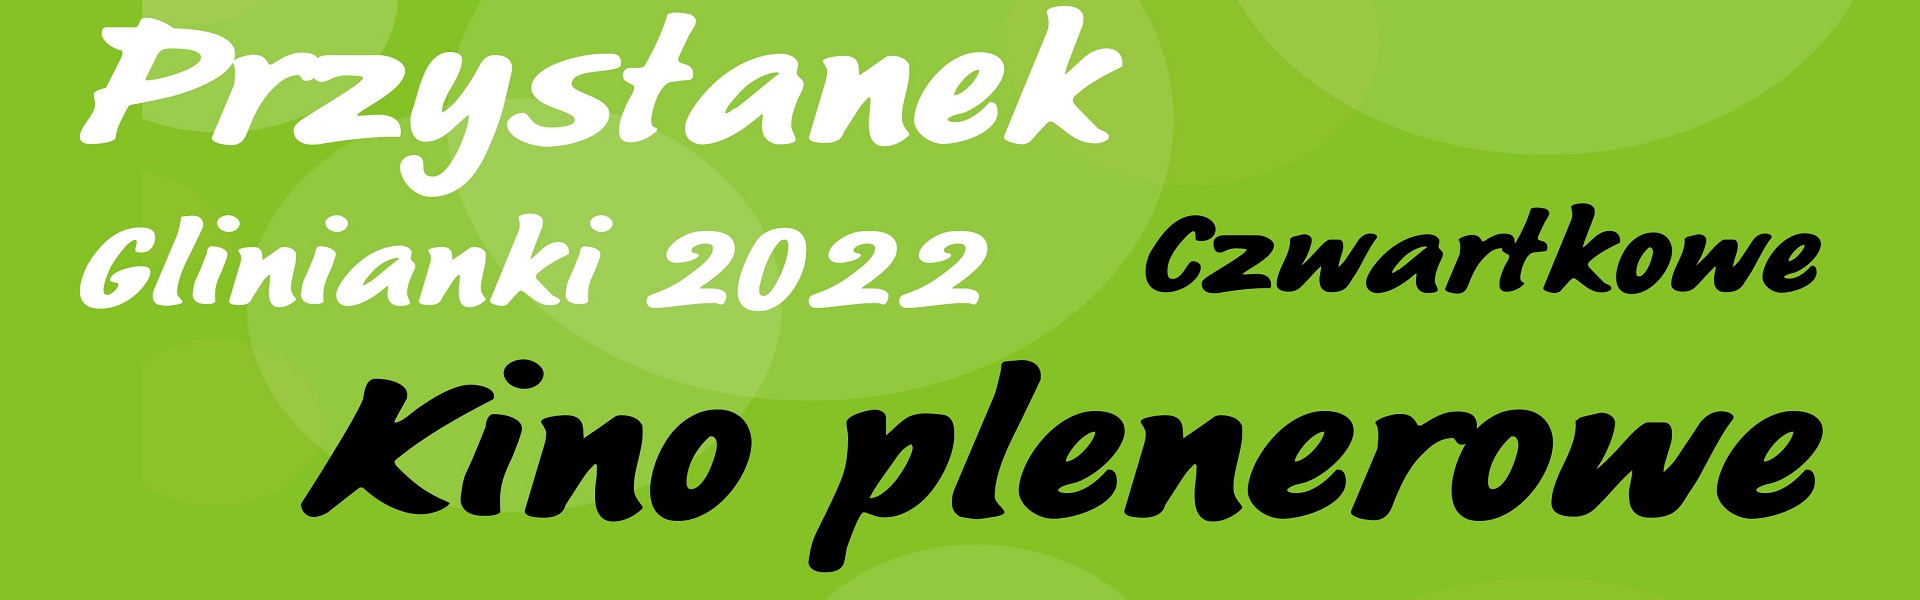 Przystanek Glinianki 2022.